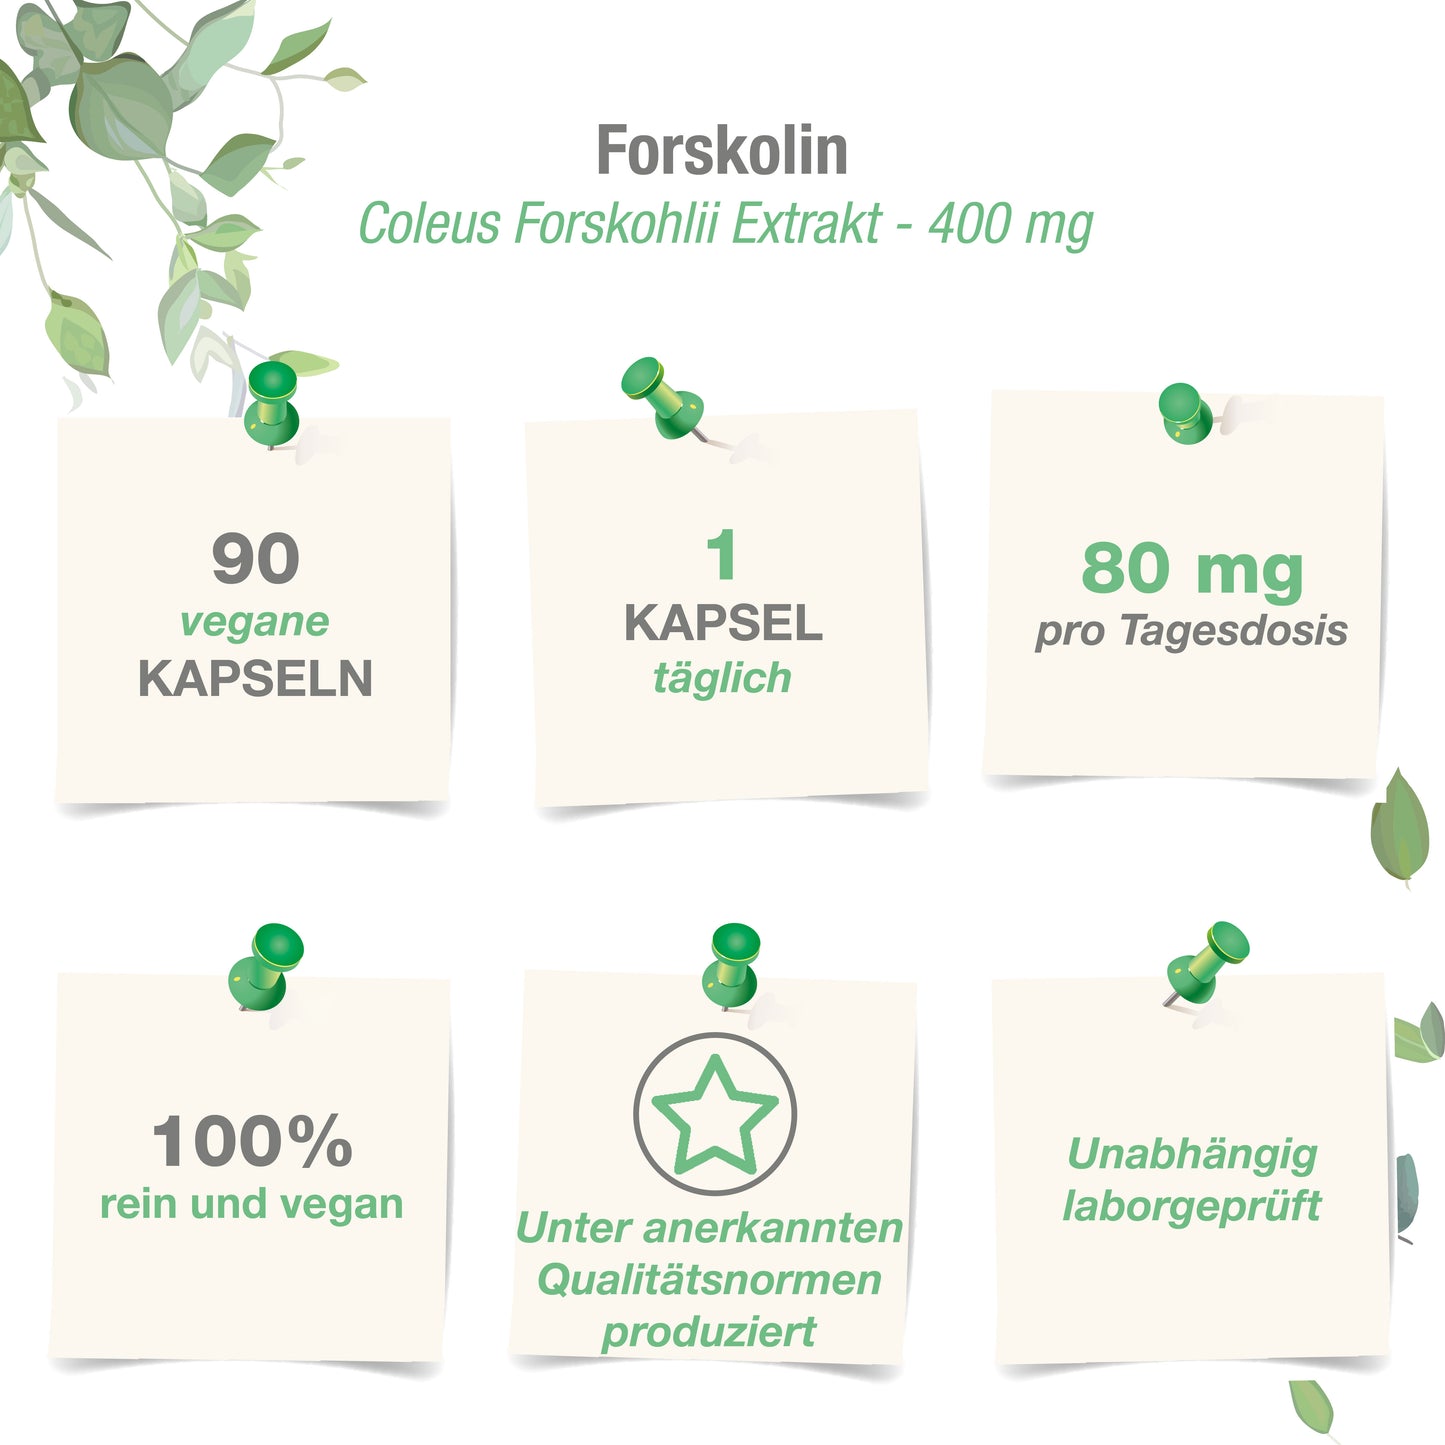 Forskolin 400 mg - 90 vegane Kapseln